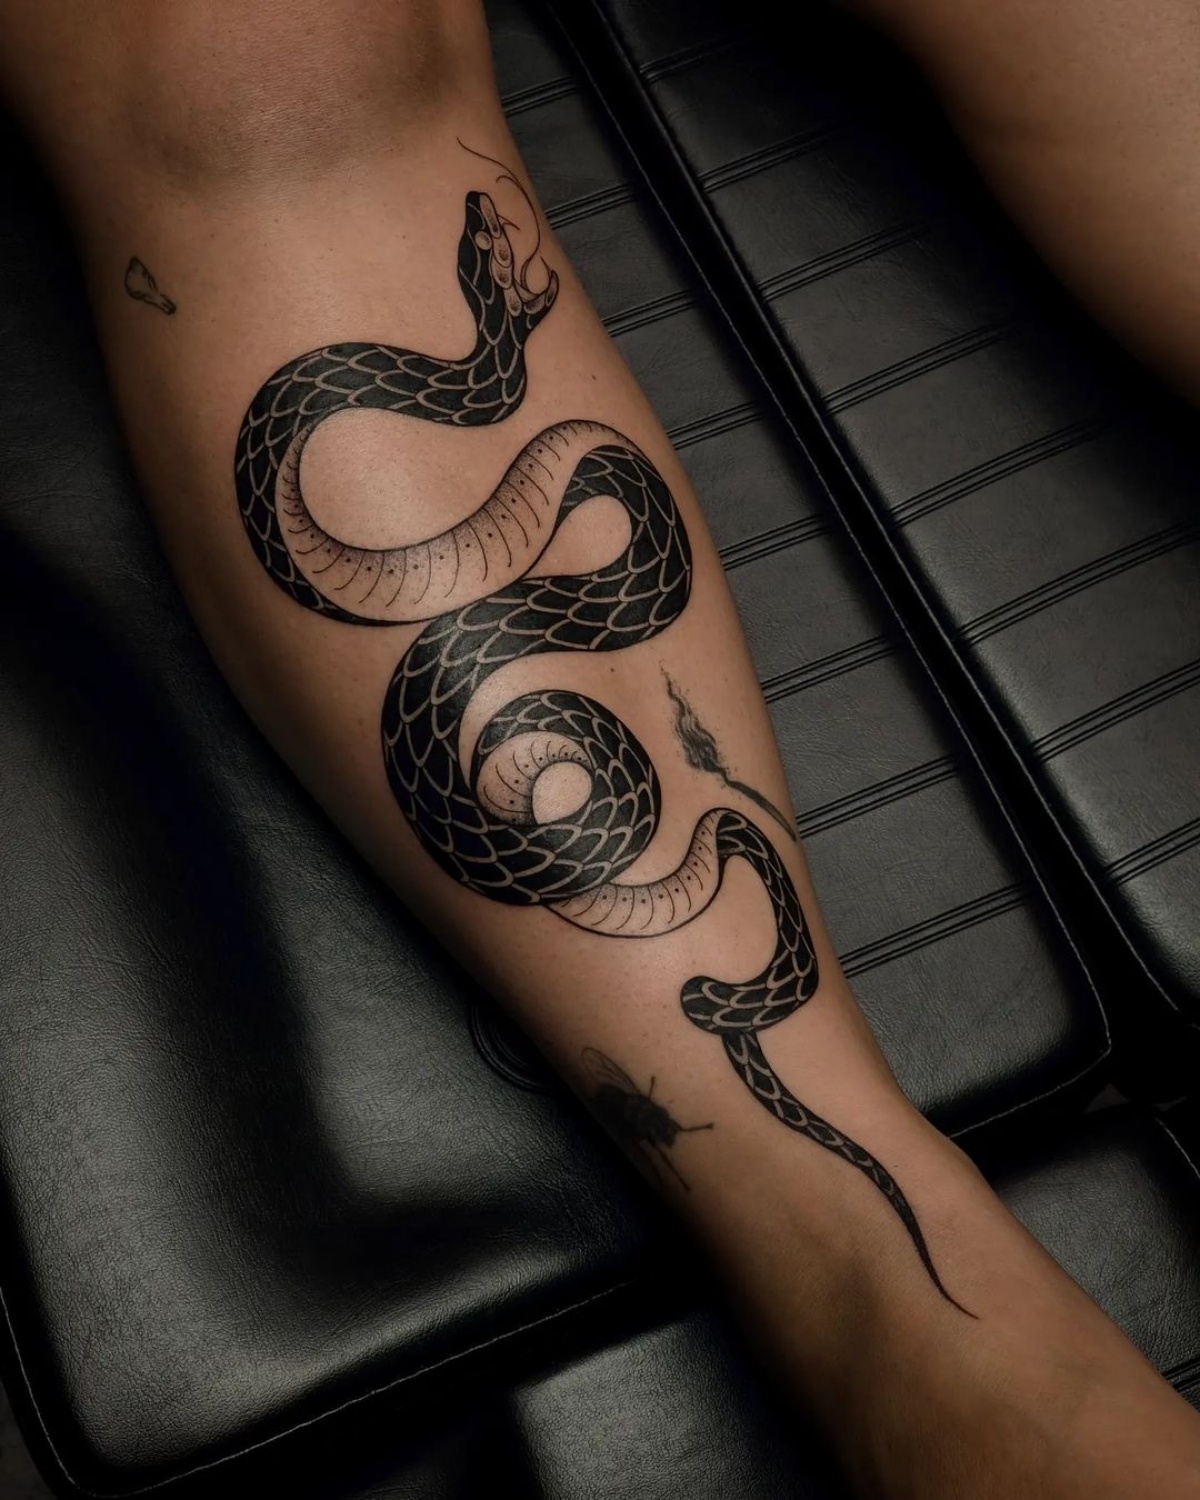 tattoo uomo disegno serpente sulla gamba